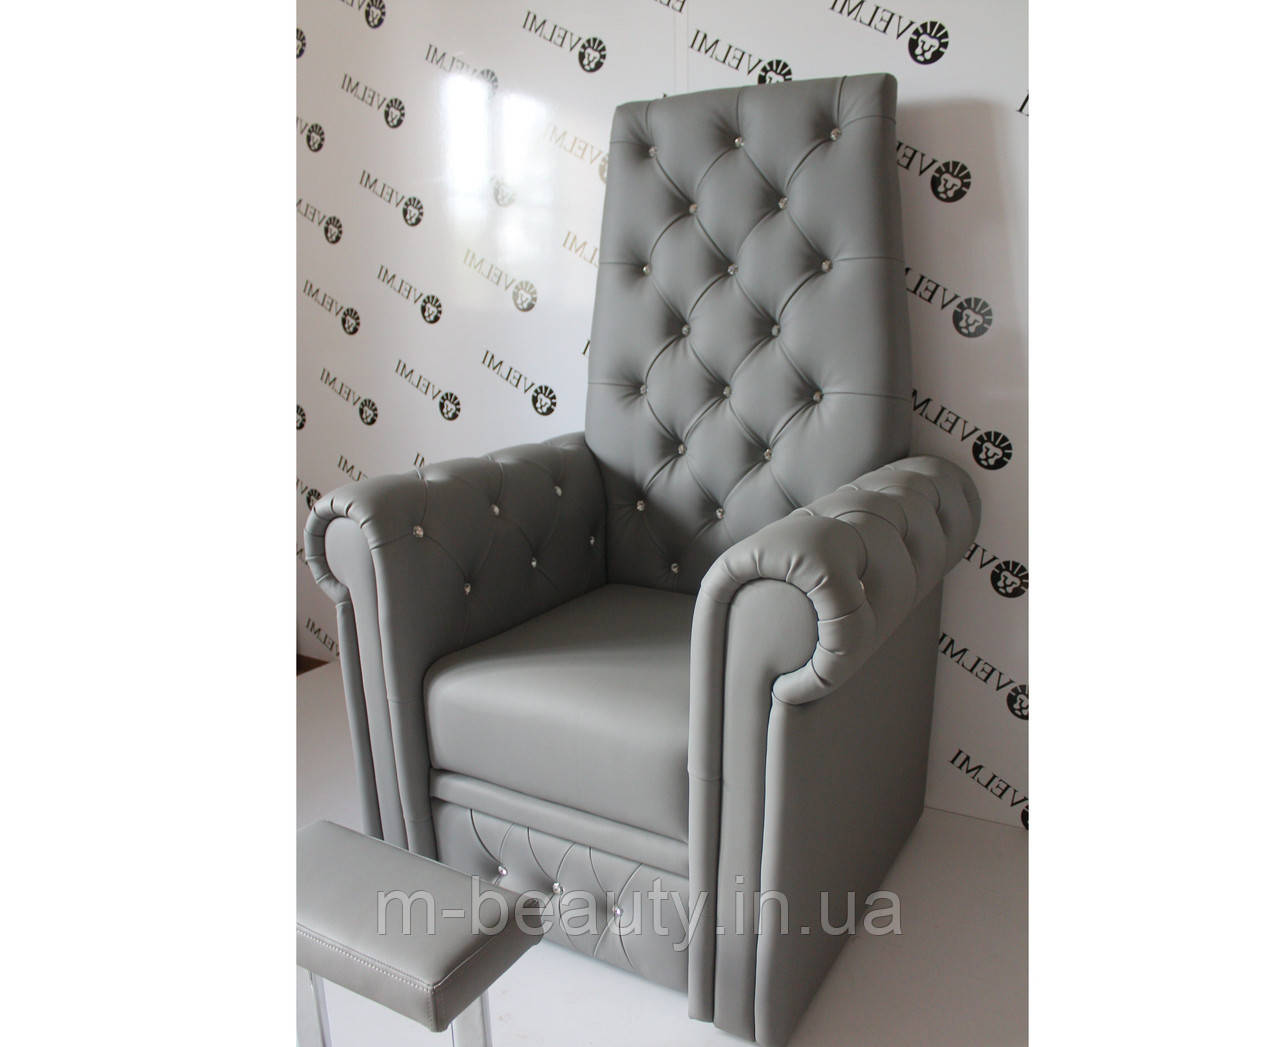 Педикюрне крісло "Трон Королеви" крісло трон для педикюру для салону краси педикюрні крісла